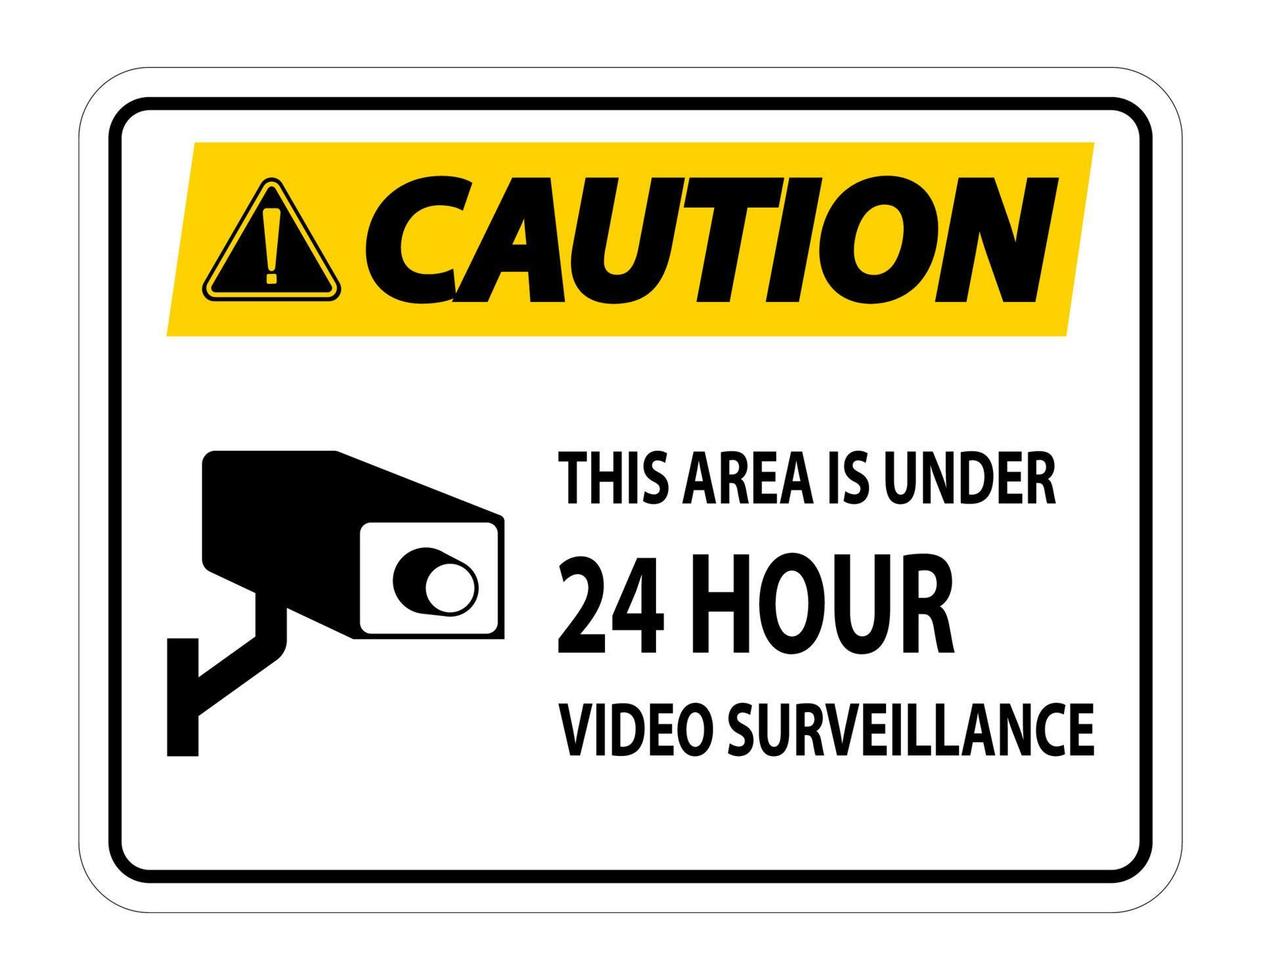 Video Surveillance Symbol Sign : Bạn đang tìm kiếm một giải pháp giám sát tuyệt vời? Video Surveillance Symbol Sign là gì bạn cần. Một biểu tượng đặc biệt, hiệu quả và an toàn sẽ đảm bảo rằng bạn luôn có một hệ thống giám sát tuyệt vời để bảo vệ tài sản và nhân viên của bạn. Hãy cùng xem bức ảnh này để thấy sự linh hoạt và tính chuyên nghiệp của Video Surveillance Symbol Sign.